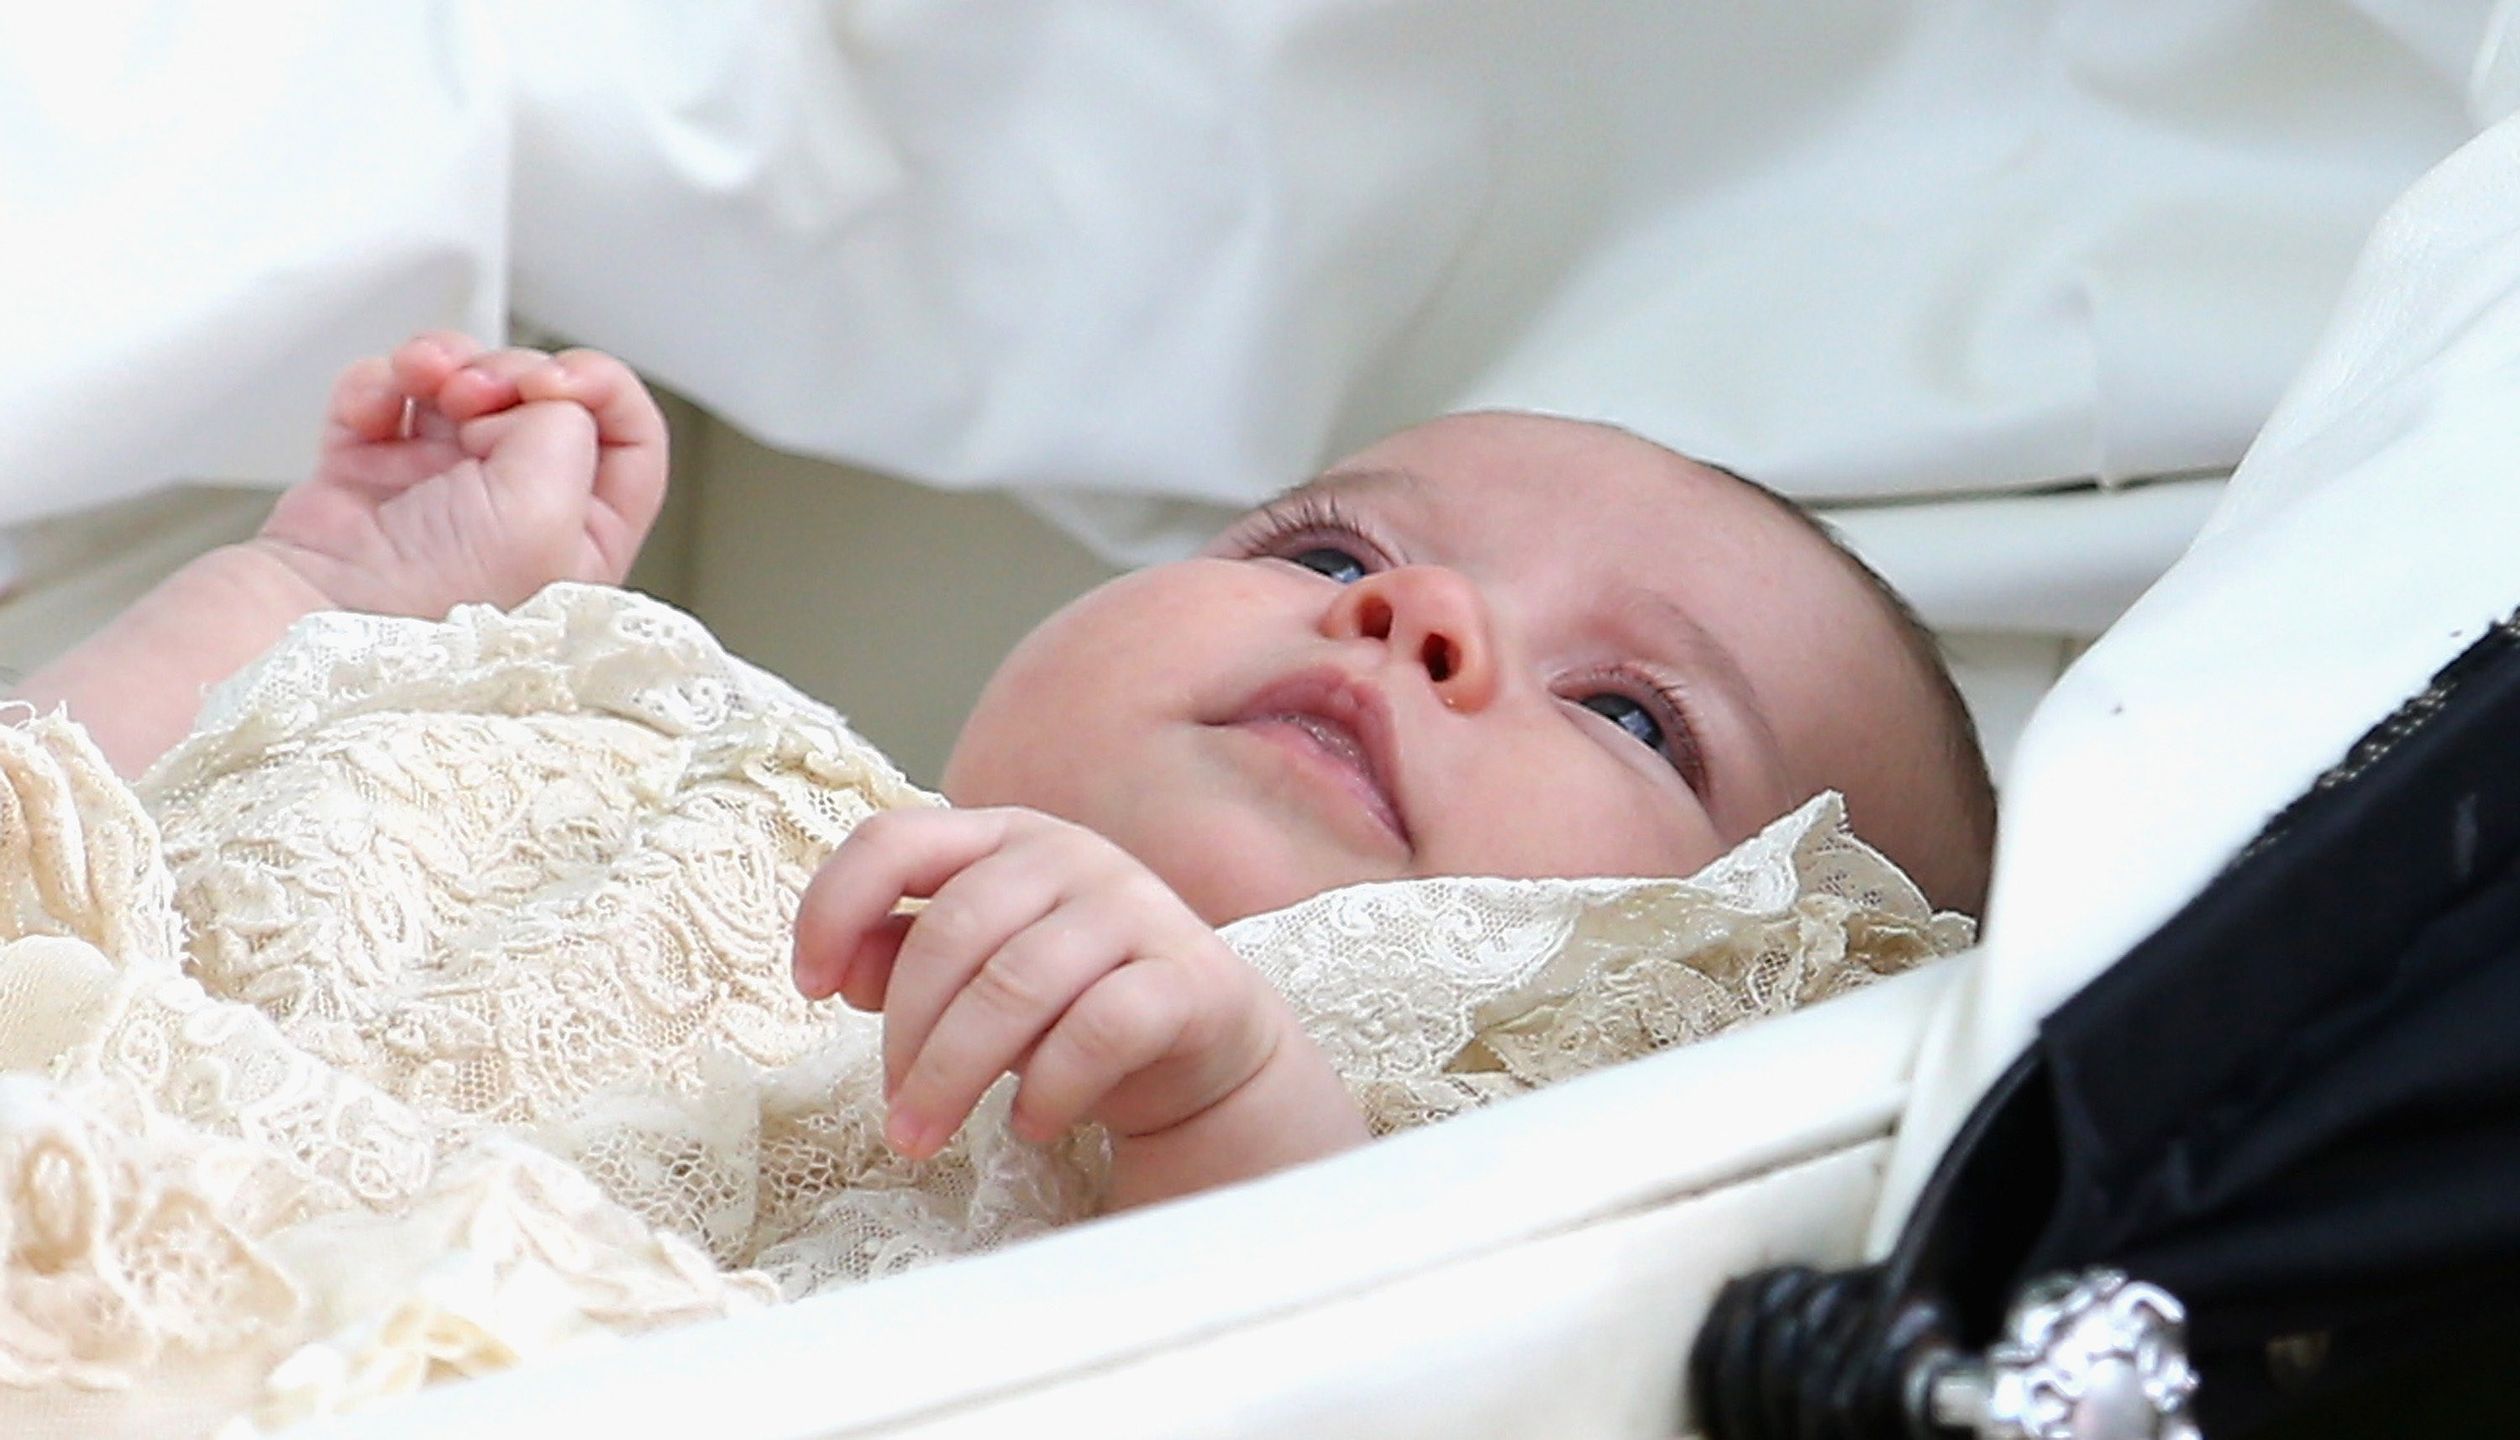 5 juli 2015 - Prinses Charlotte wordt gedoopt